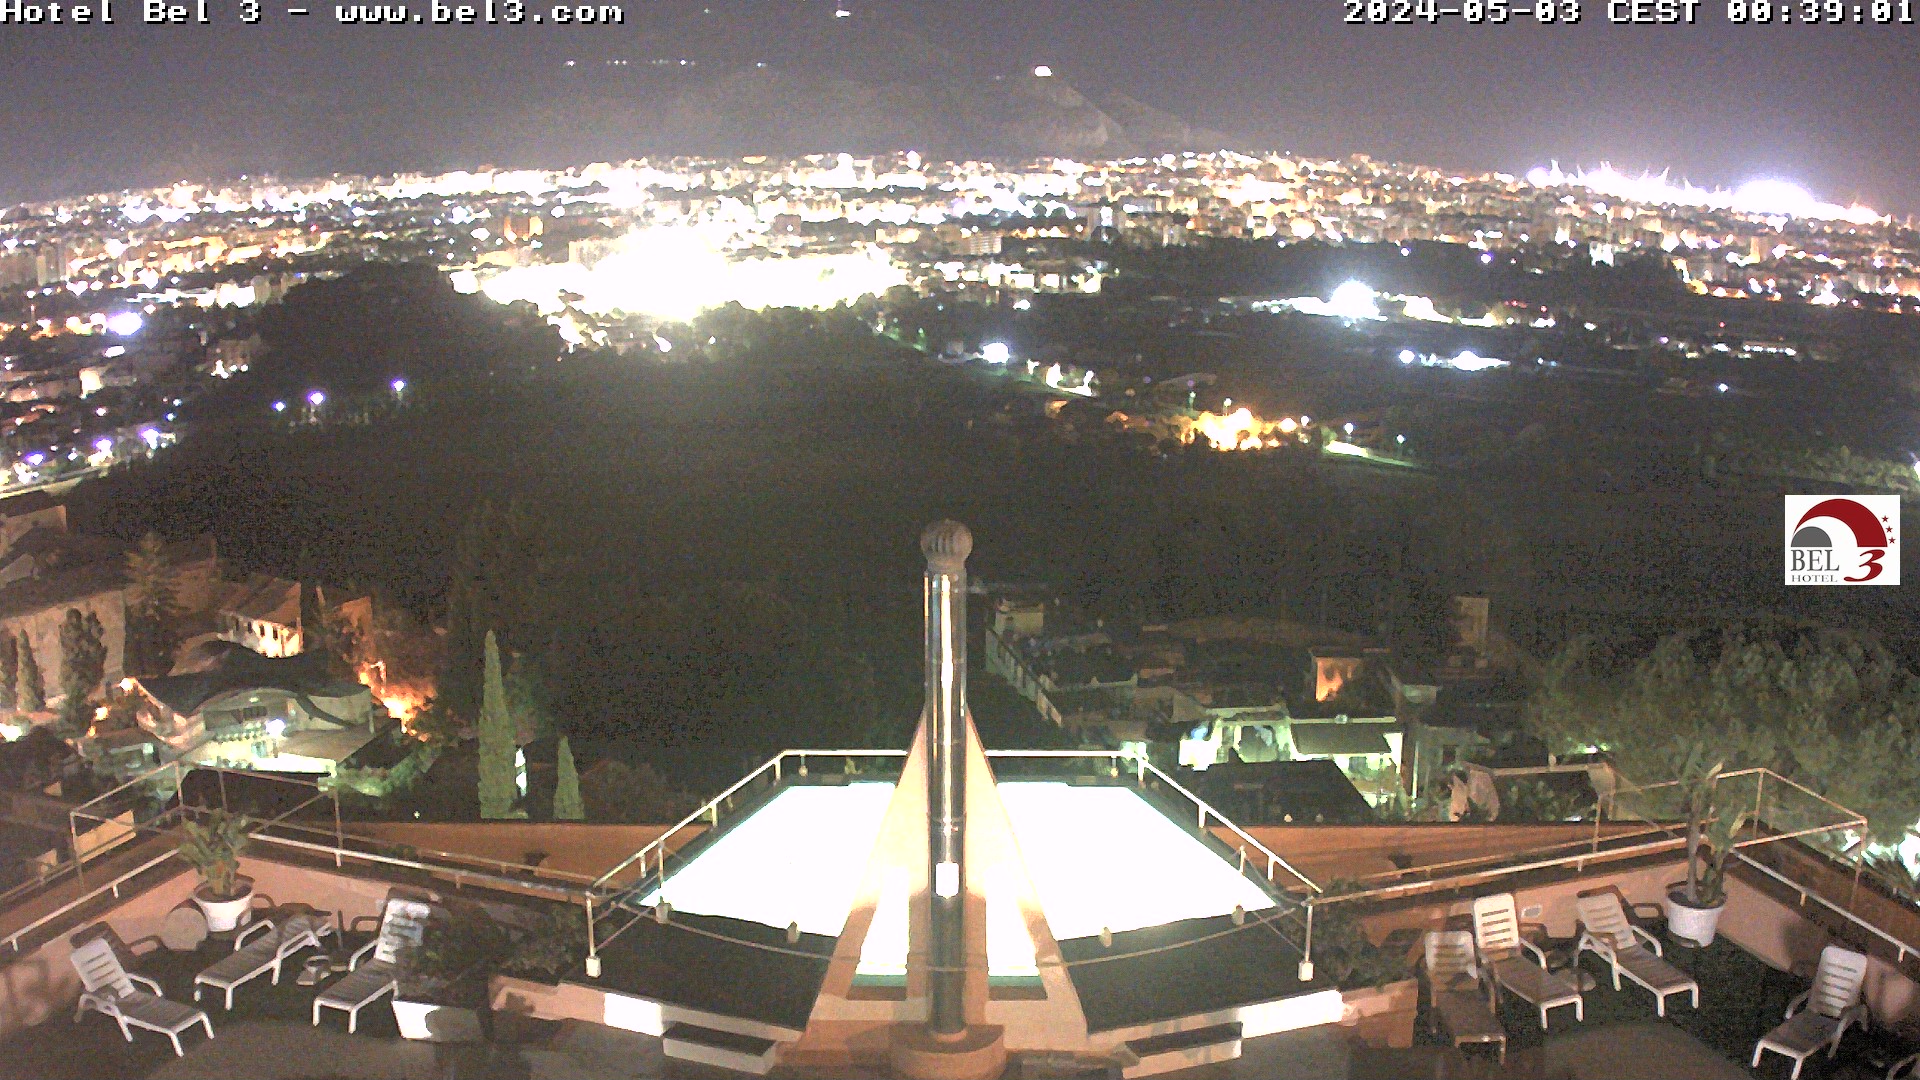 Palermo, webcam dal Monte Pellegrino di [url]http://www.bel3.com[/url]